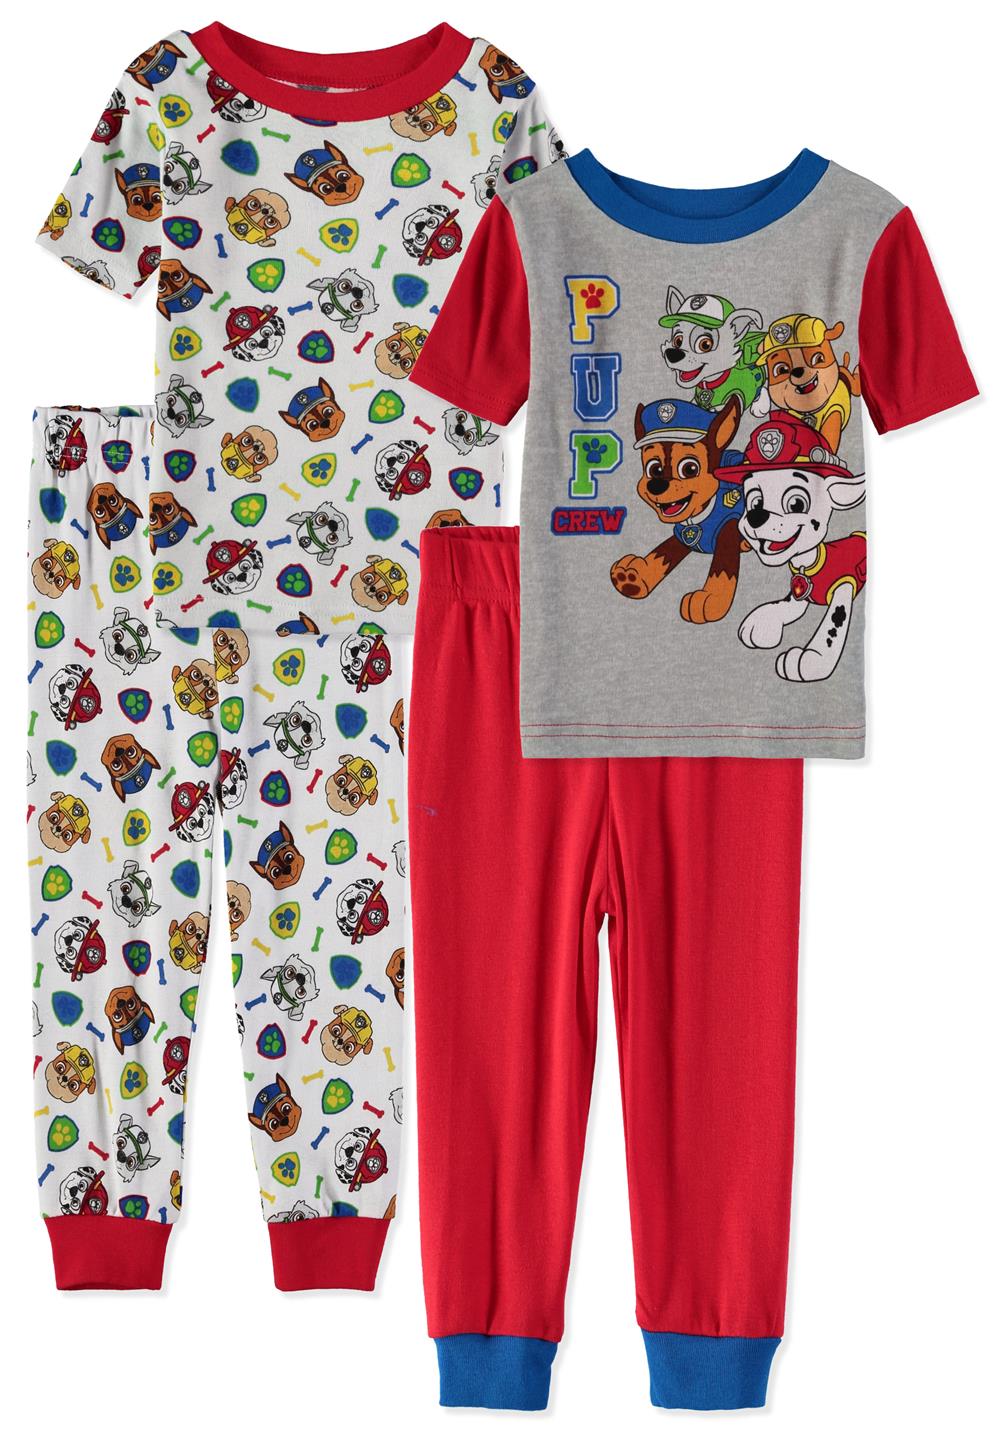 Nickelodeon Boys 12-24 Months 4 Piece Pajama Set